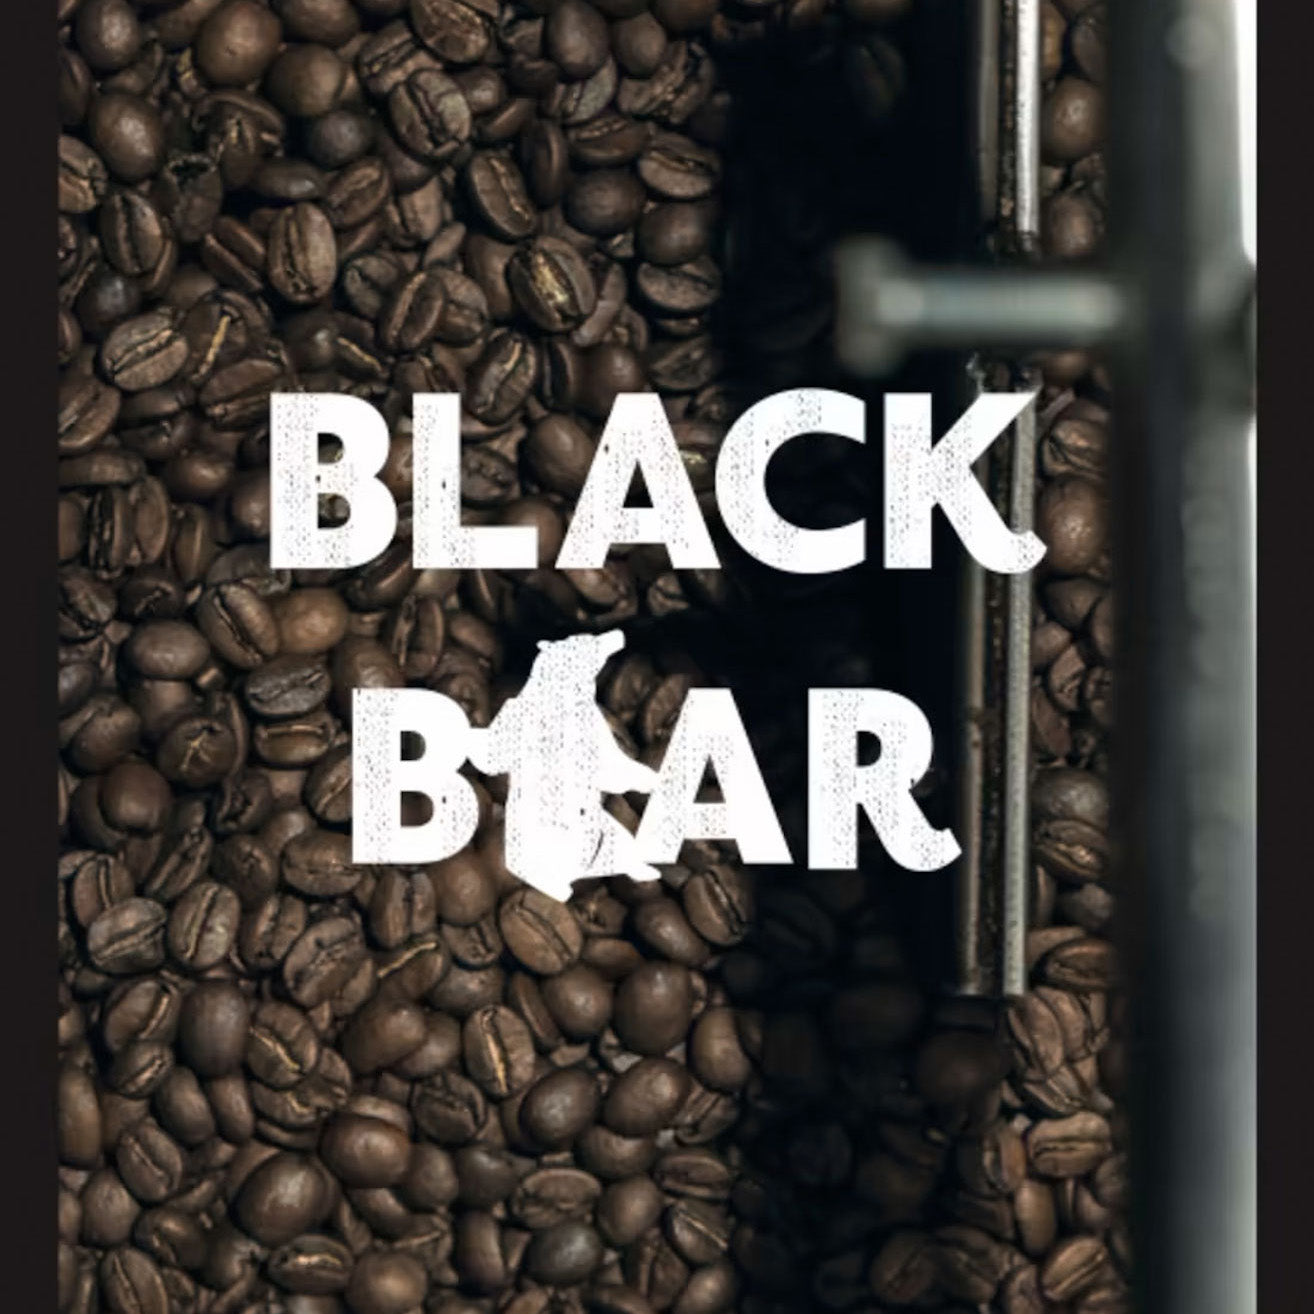 Black bear coffee blend